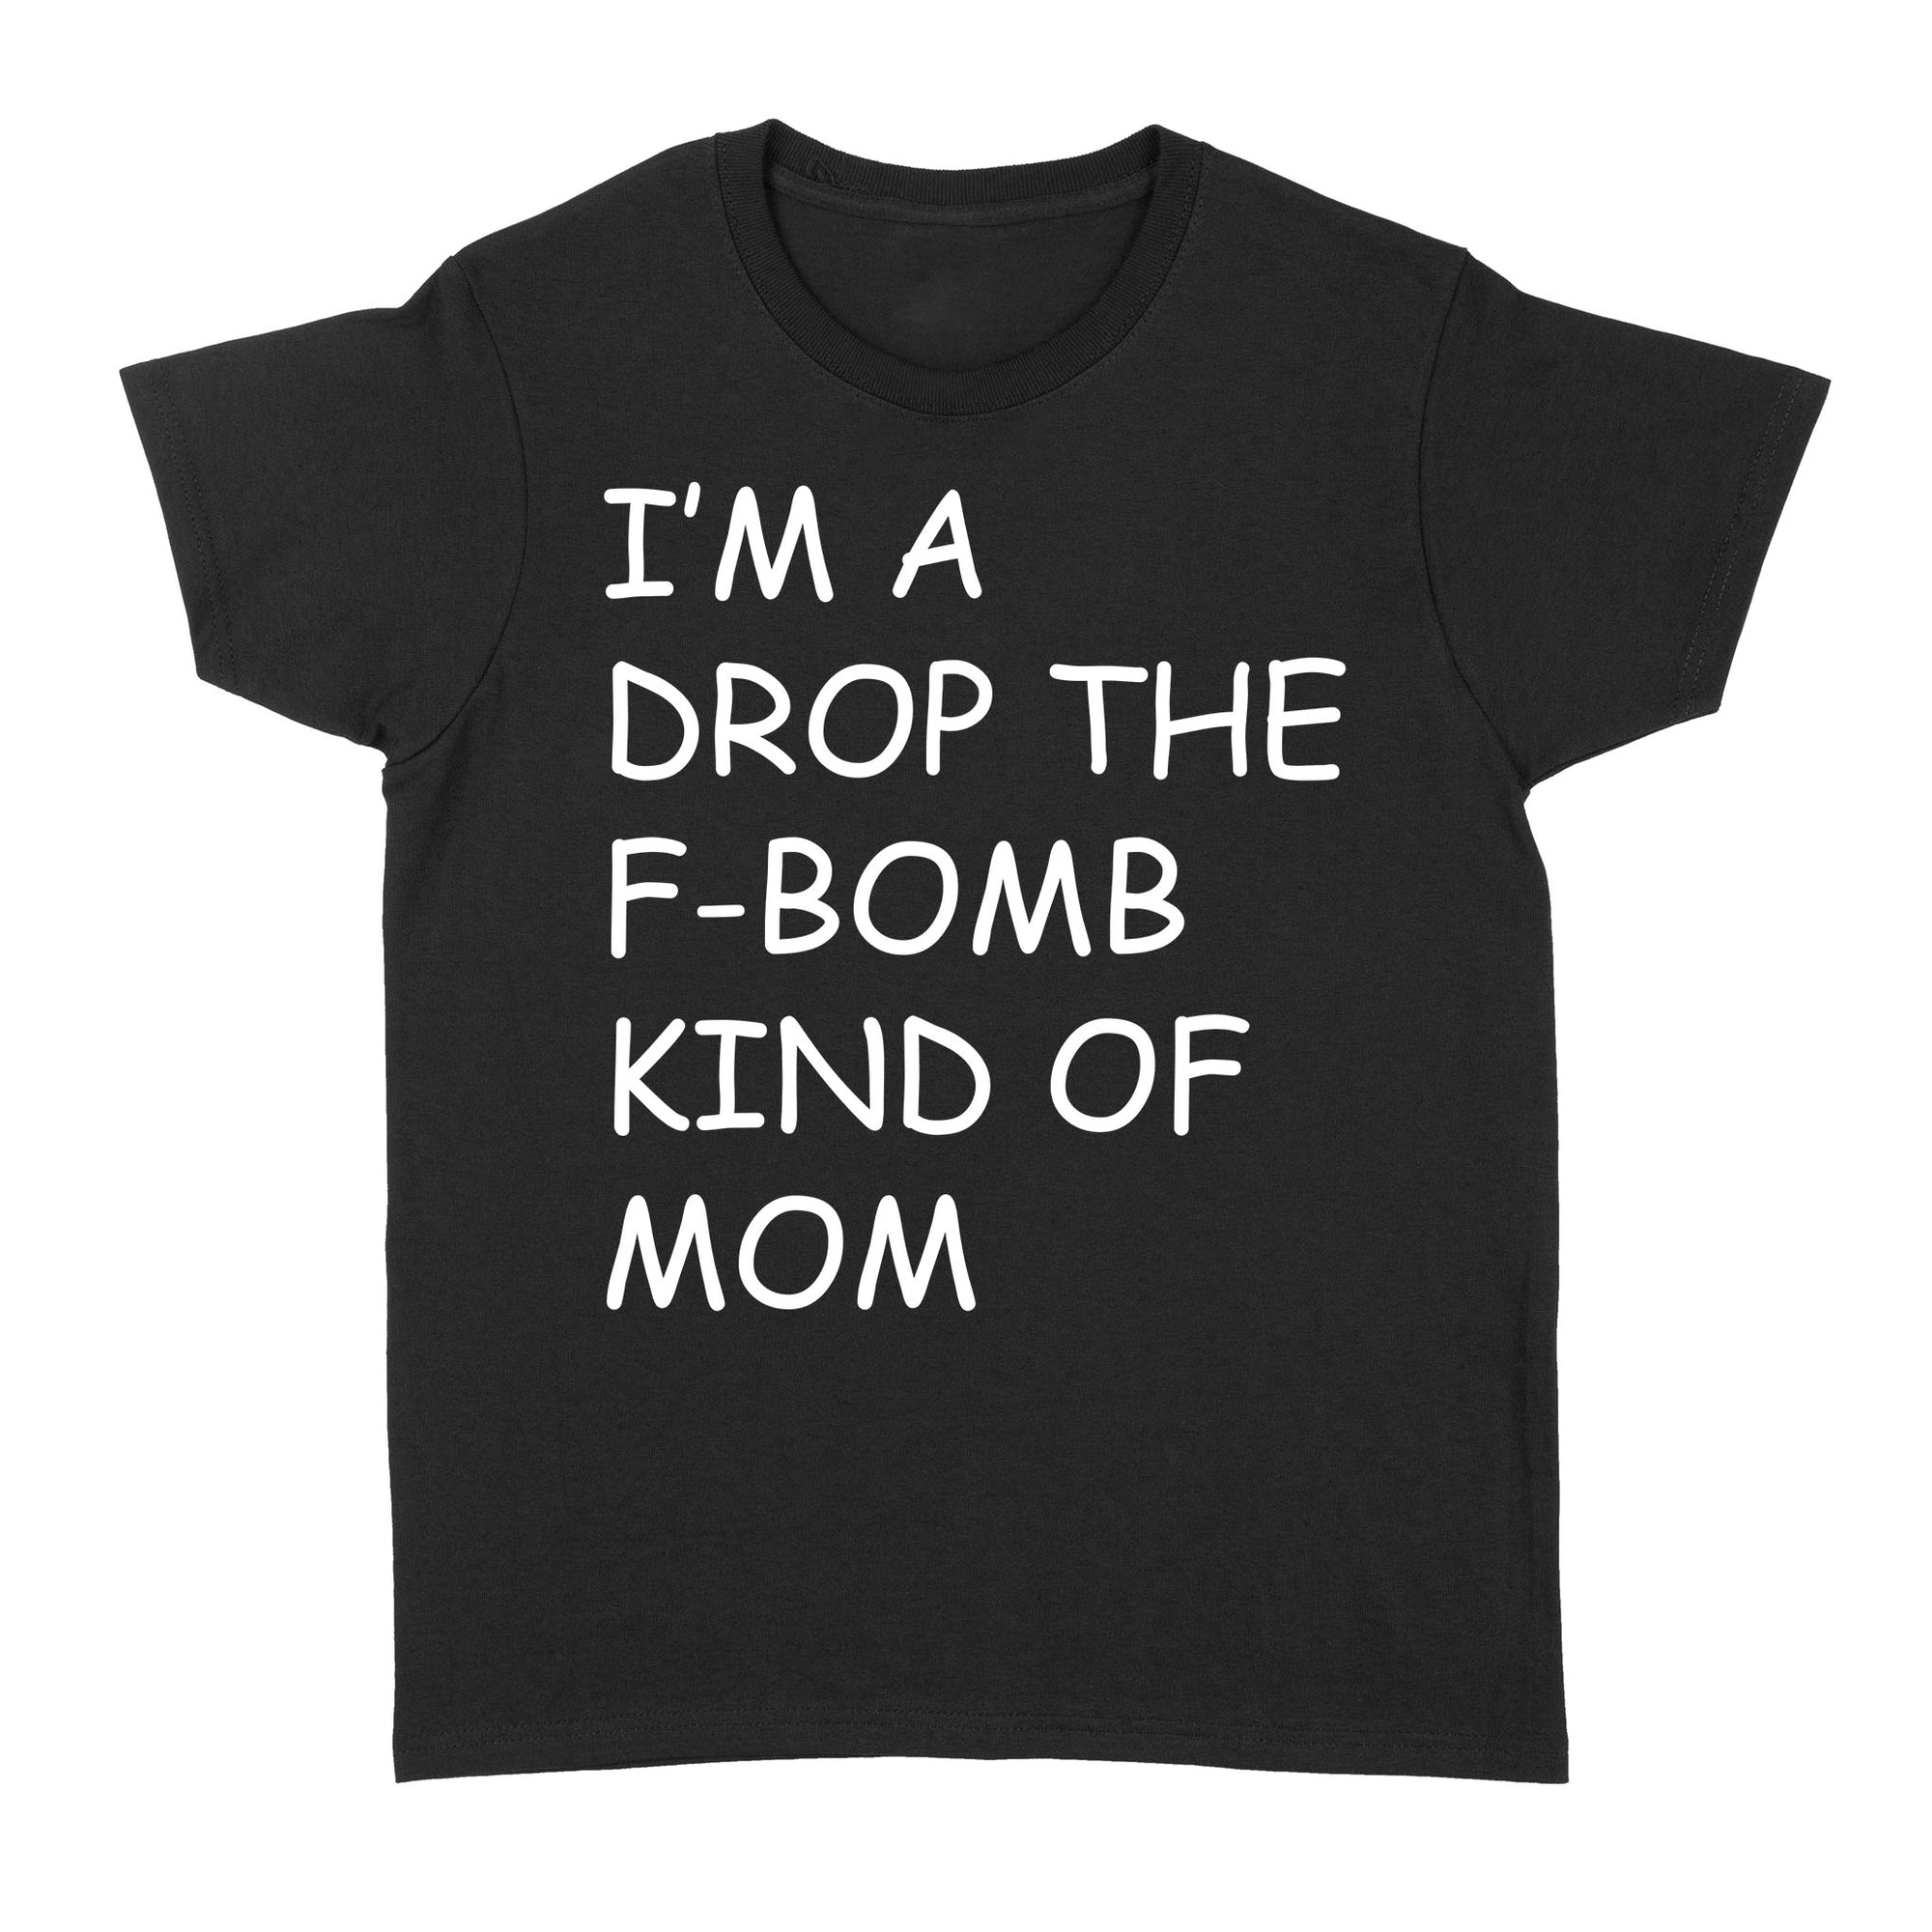 I'm A Drop The F-Bomb Kind Of Mom - Standard Women's T-shirt